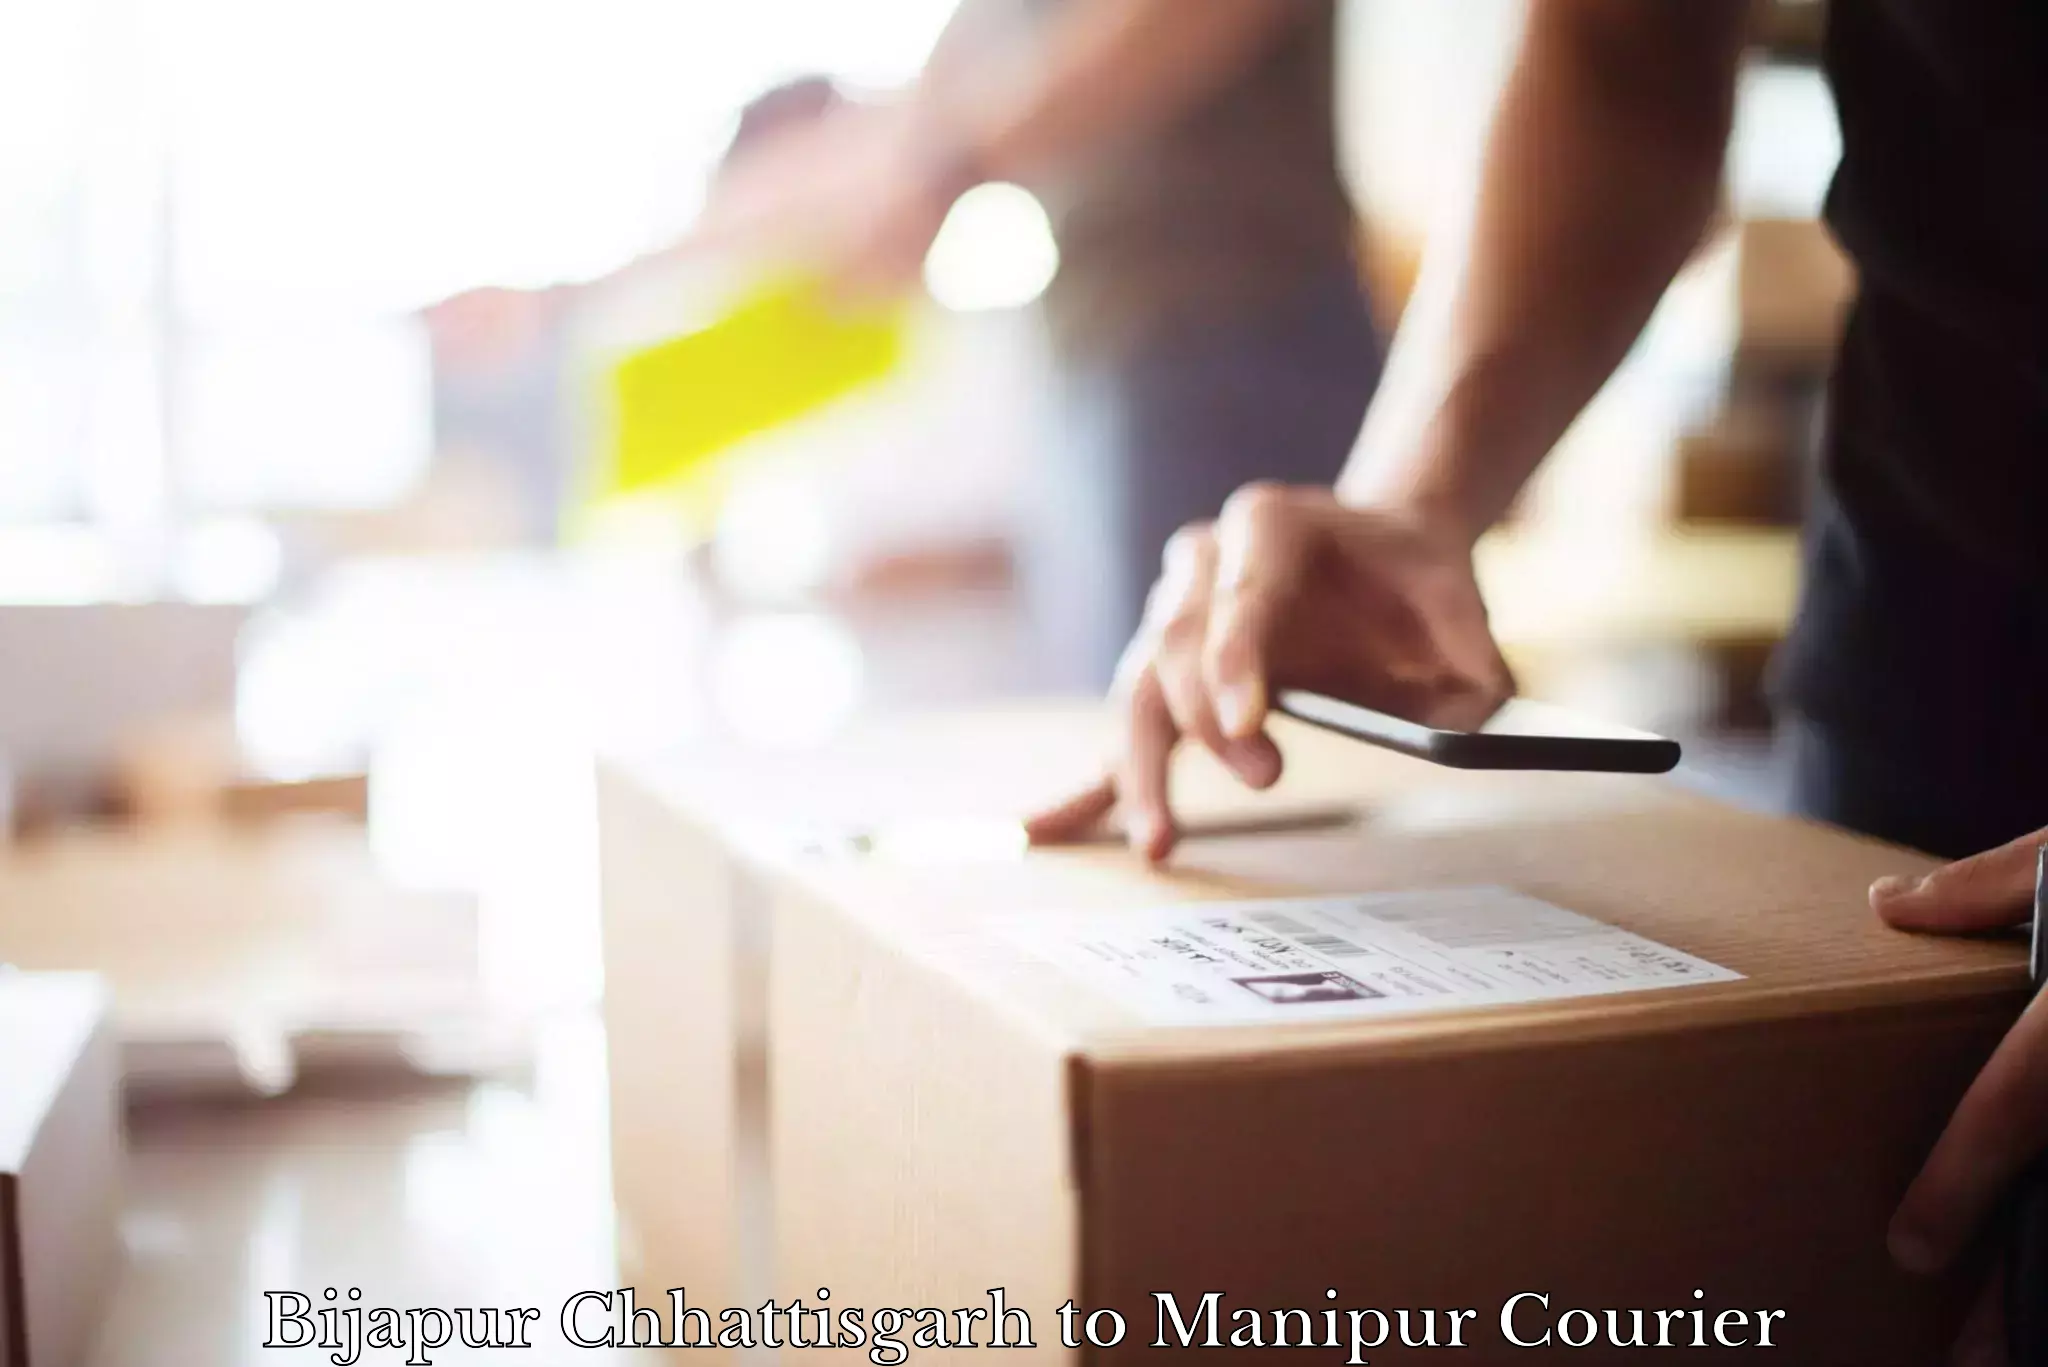 End-to-end delivery Bijapur Chhattisgarh to Senapati